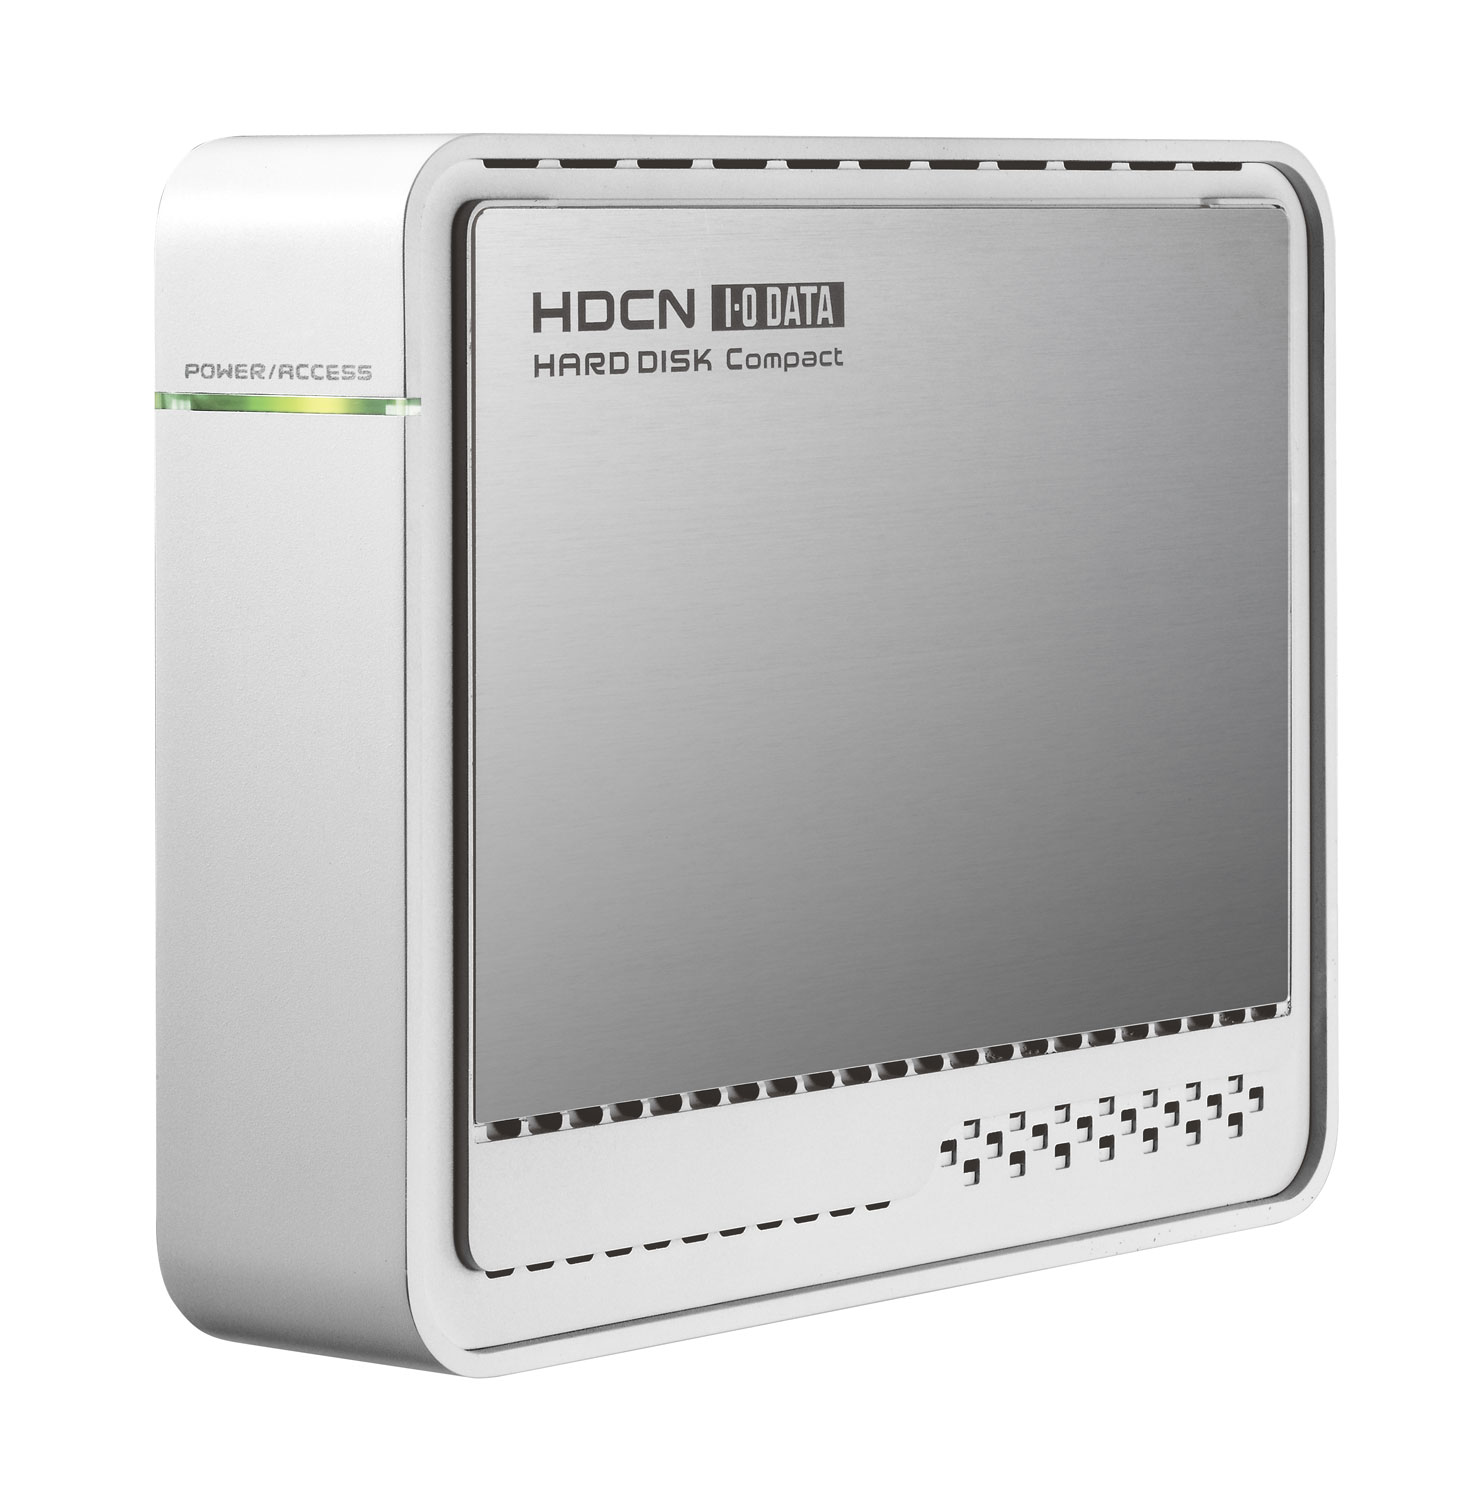 HDCN-Uシリーズ 仕様 外付けHDD IODATA アイ・オー・データ機器